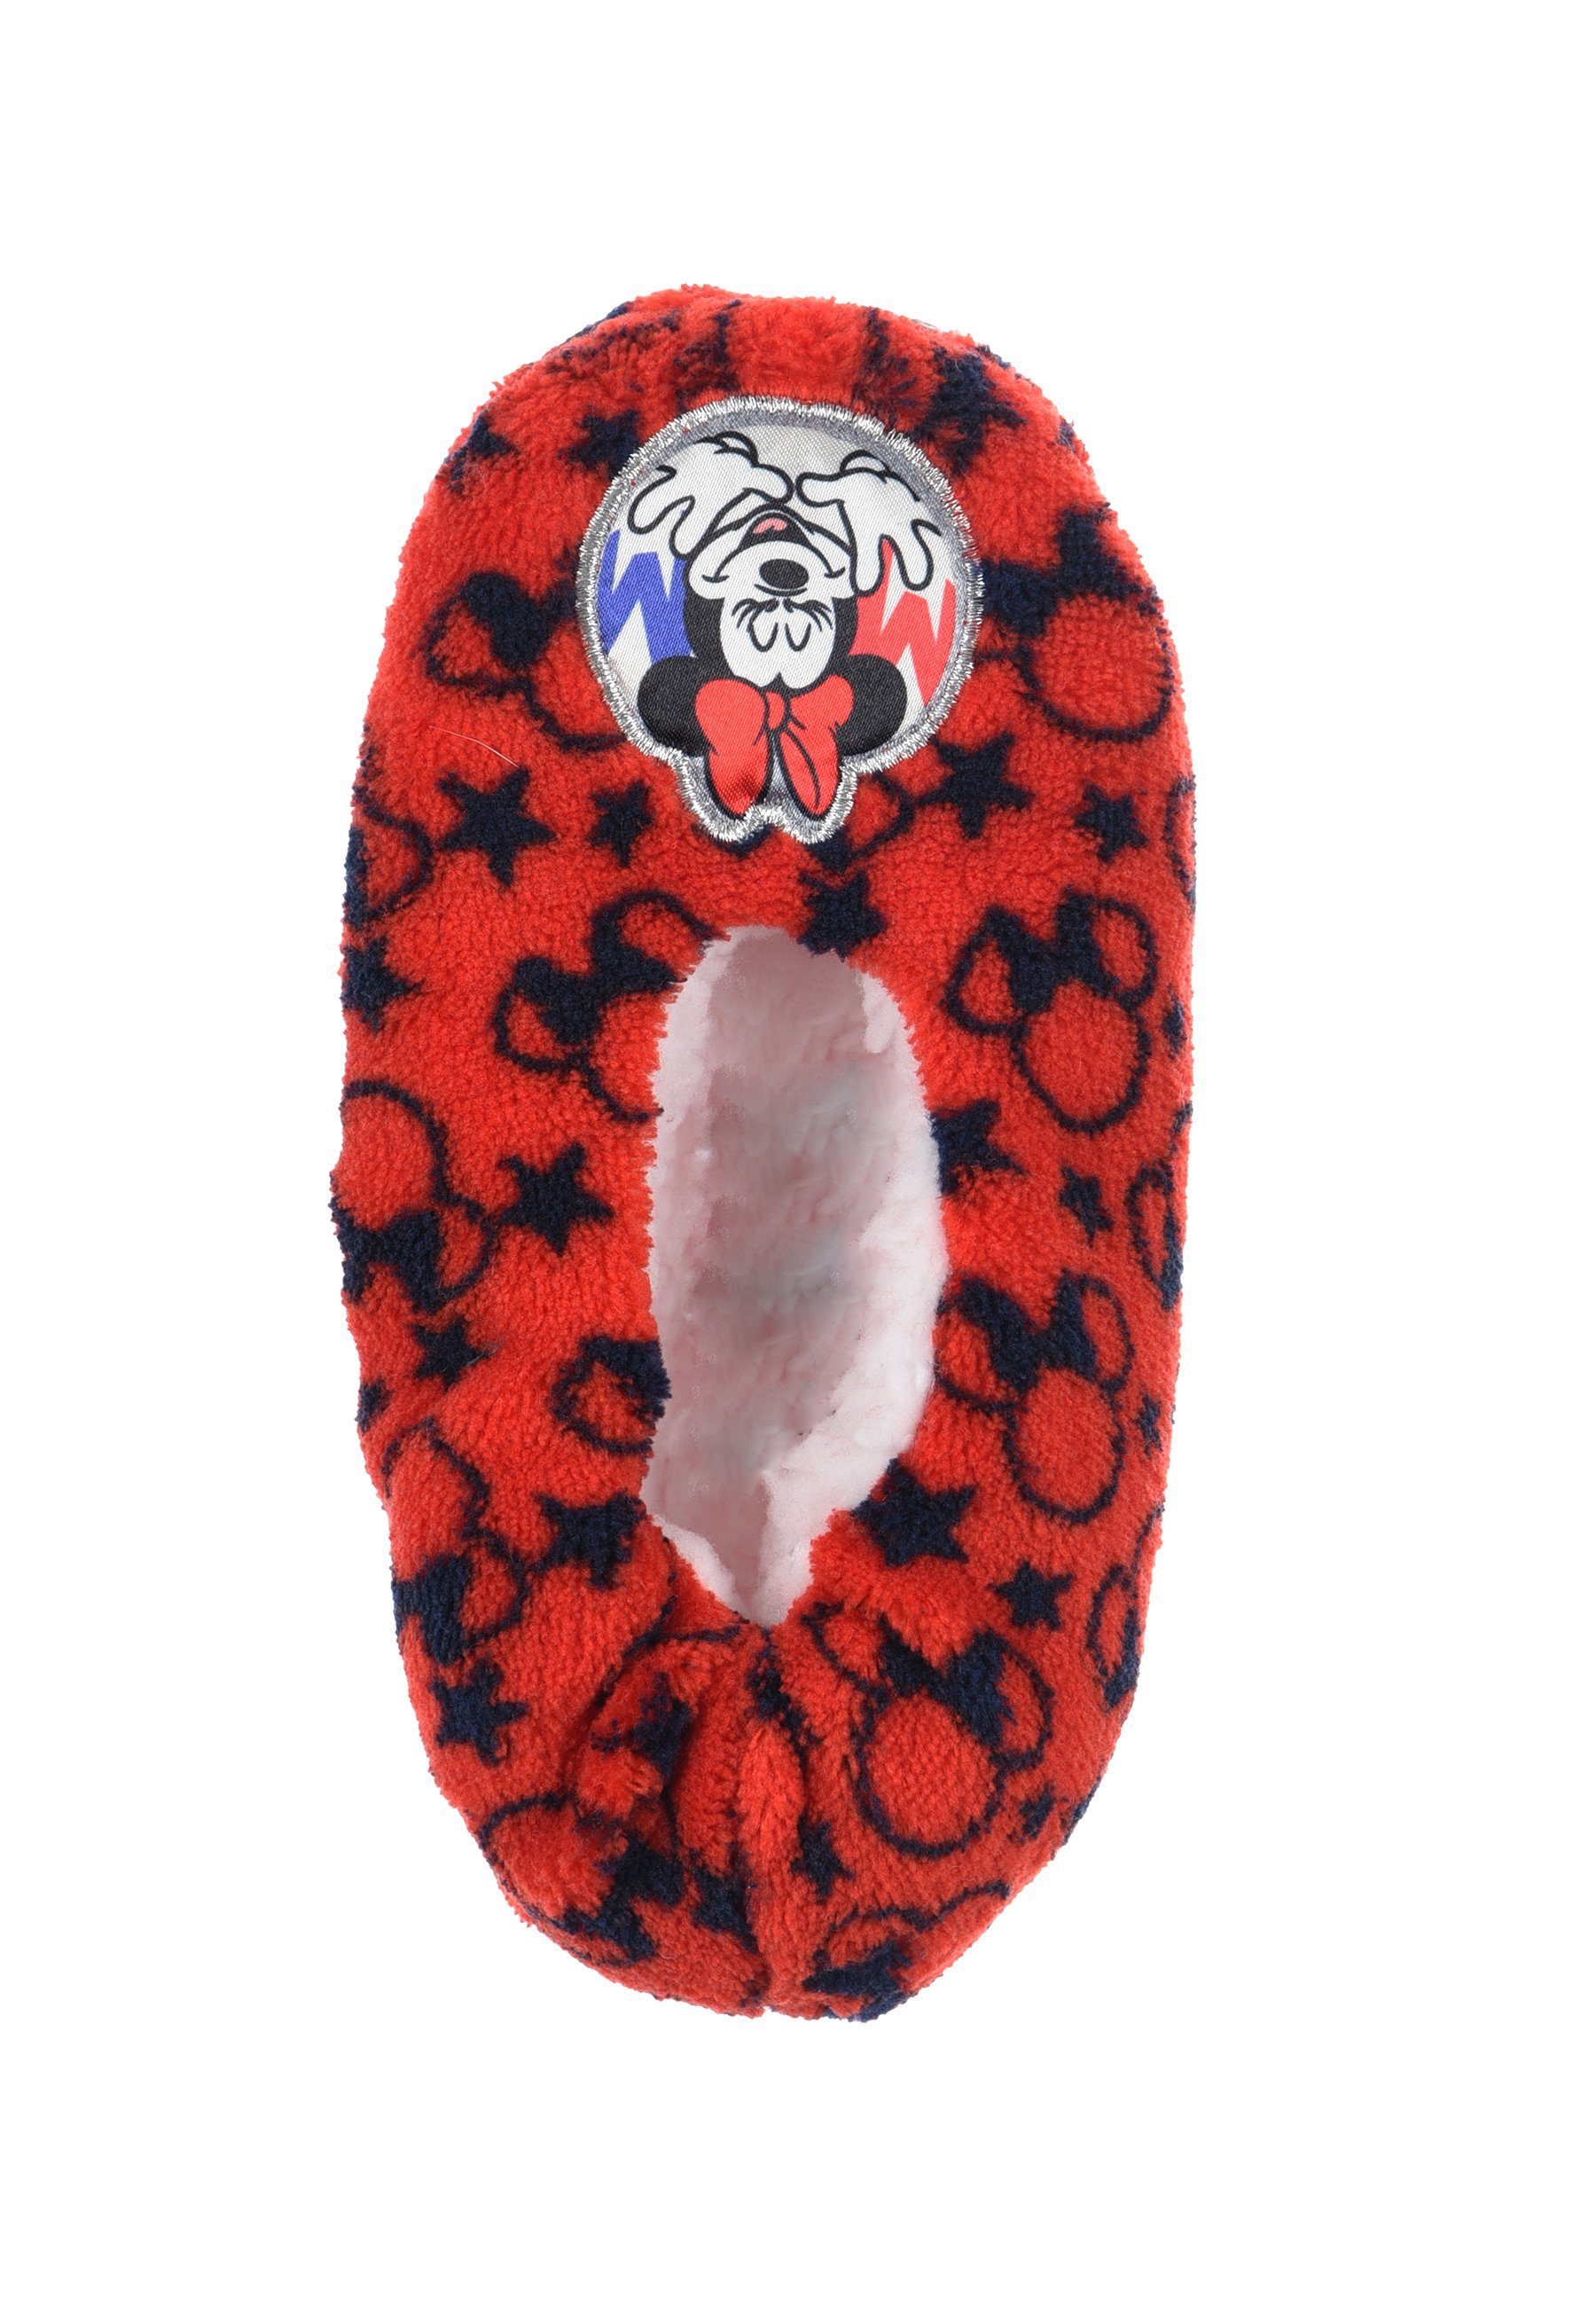 Mini Kinder Mädchen Mouse Plüsch Rot Maus Winter Disney Hausschuhe Hausschuhe Minnie